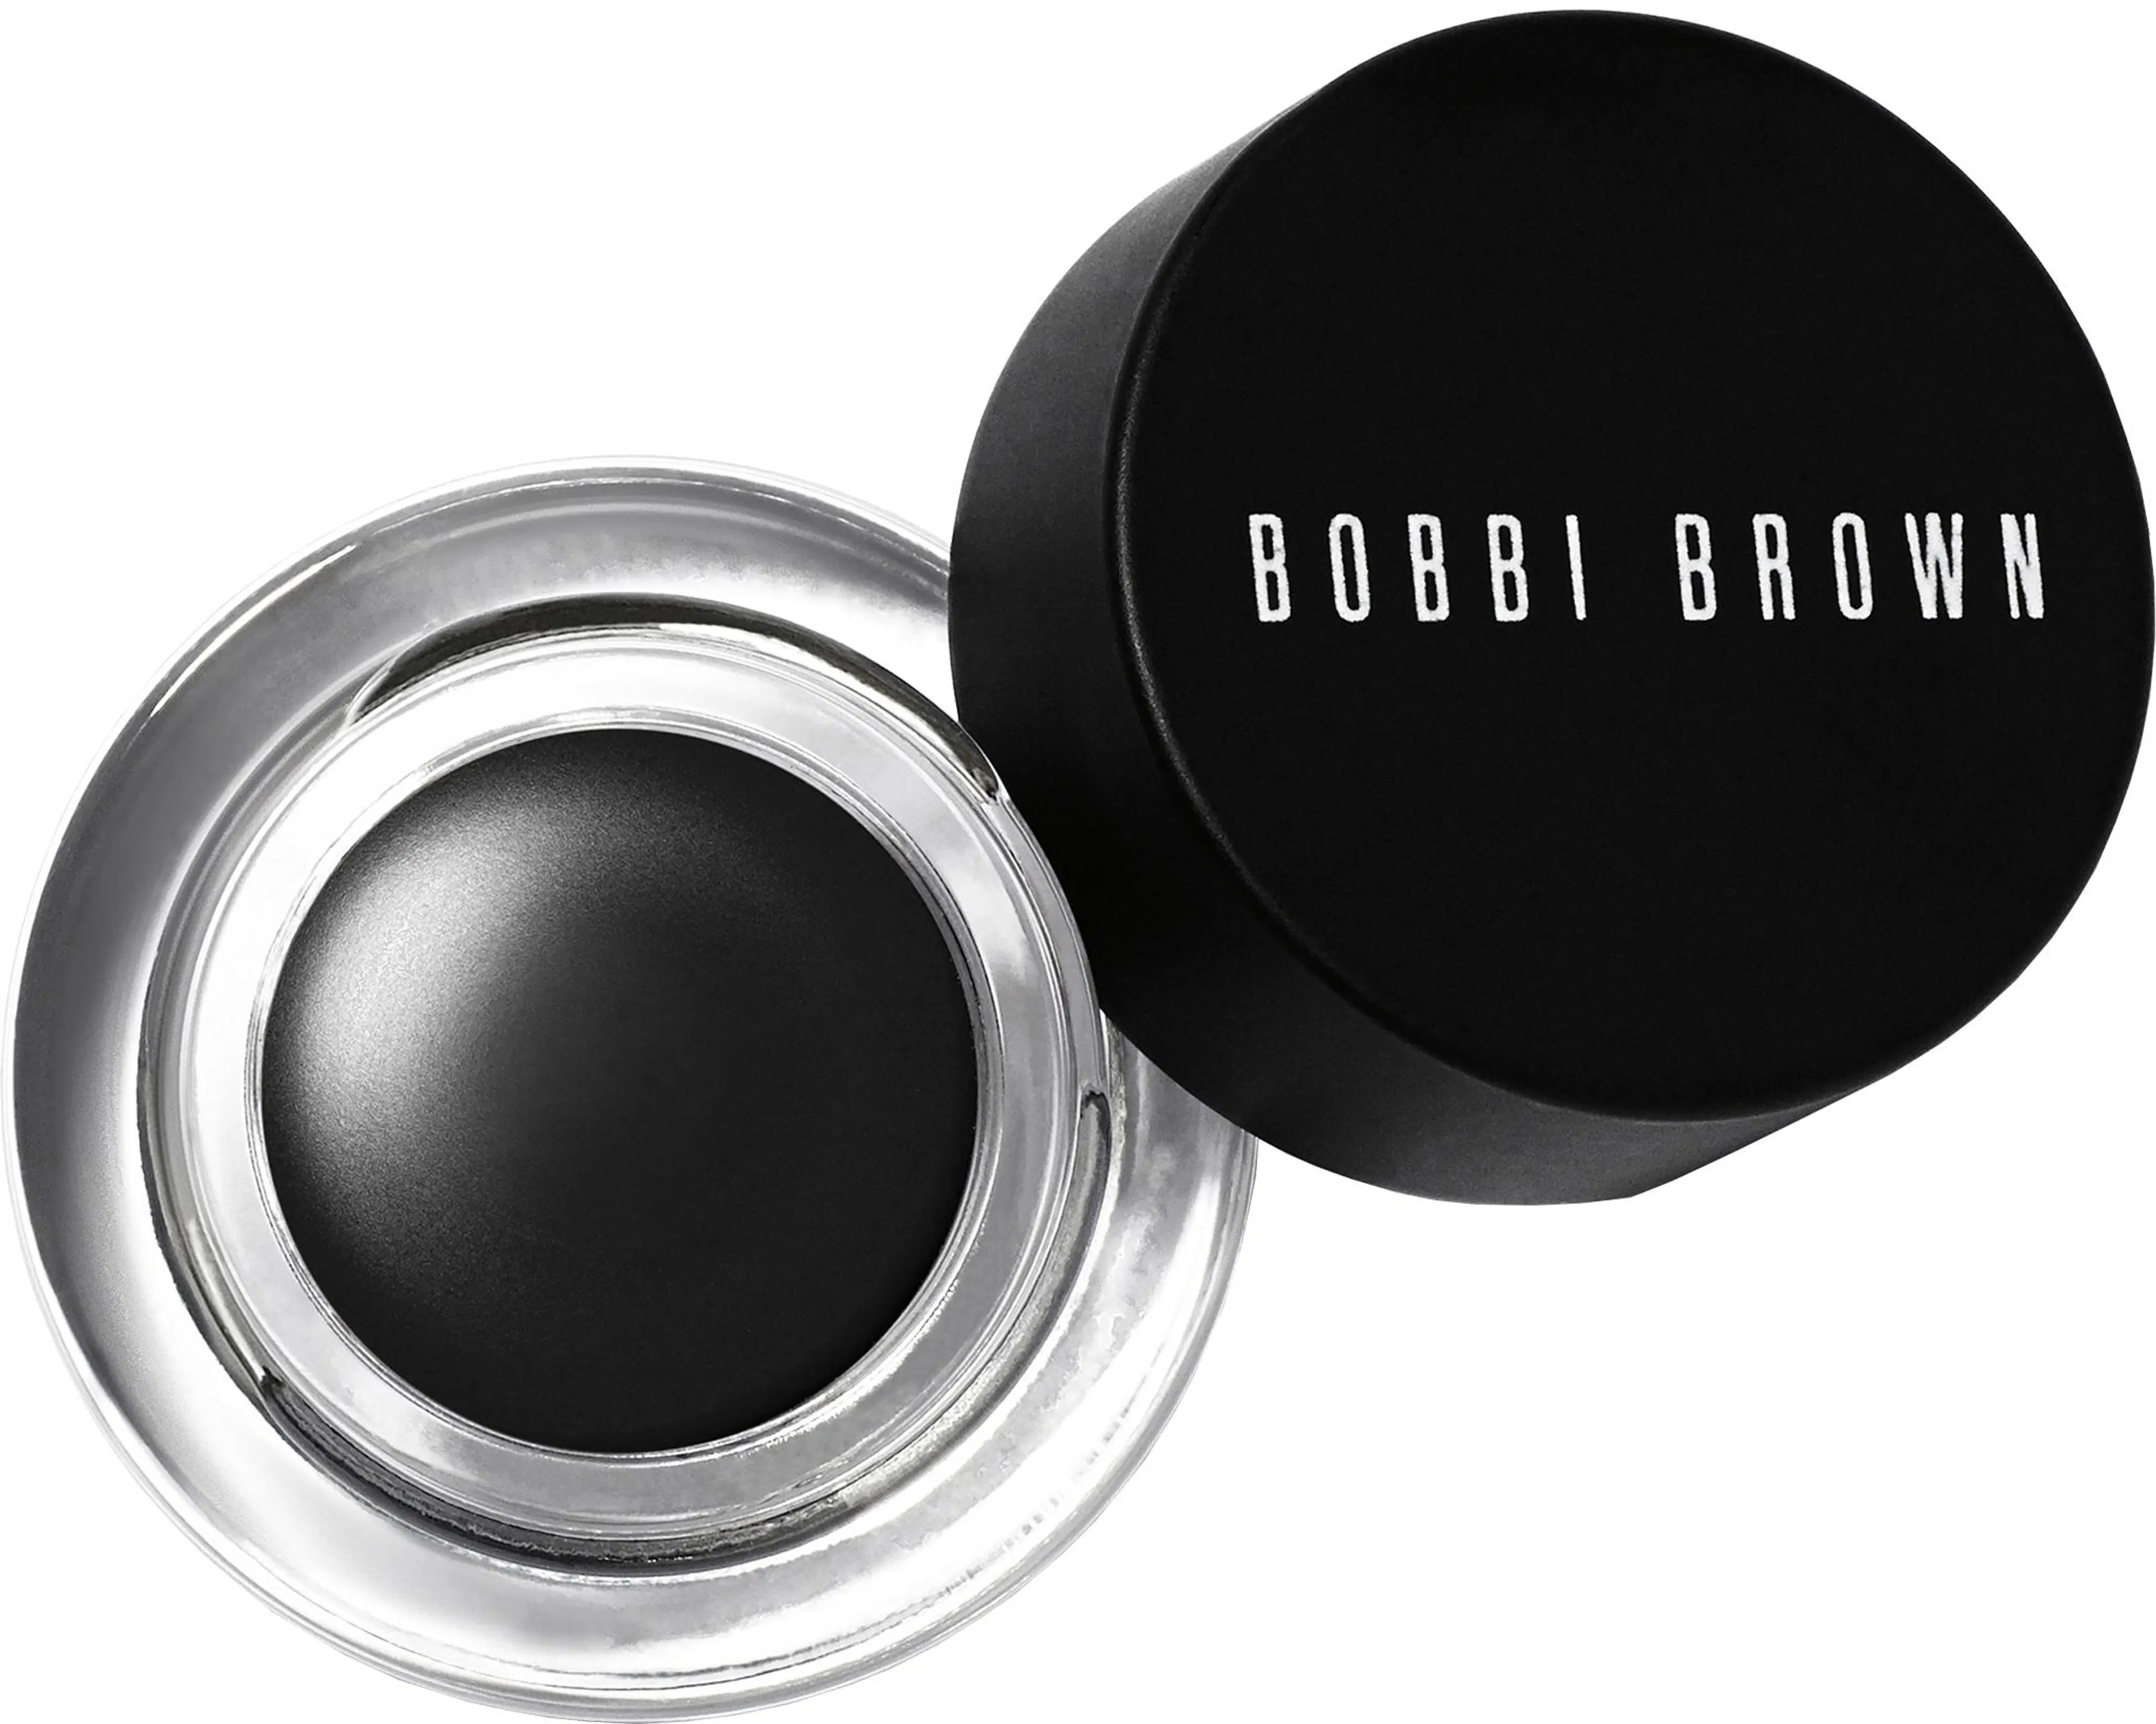 Bobbi Brown Long-Wear Gel Eyeliner silmänrajausväri 3 g